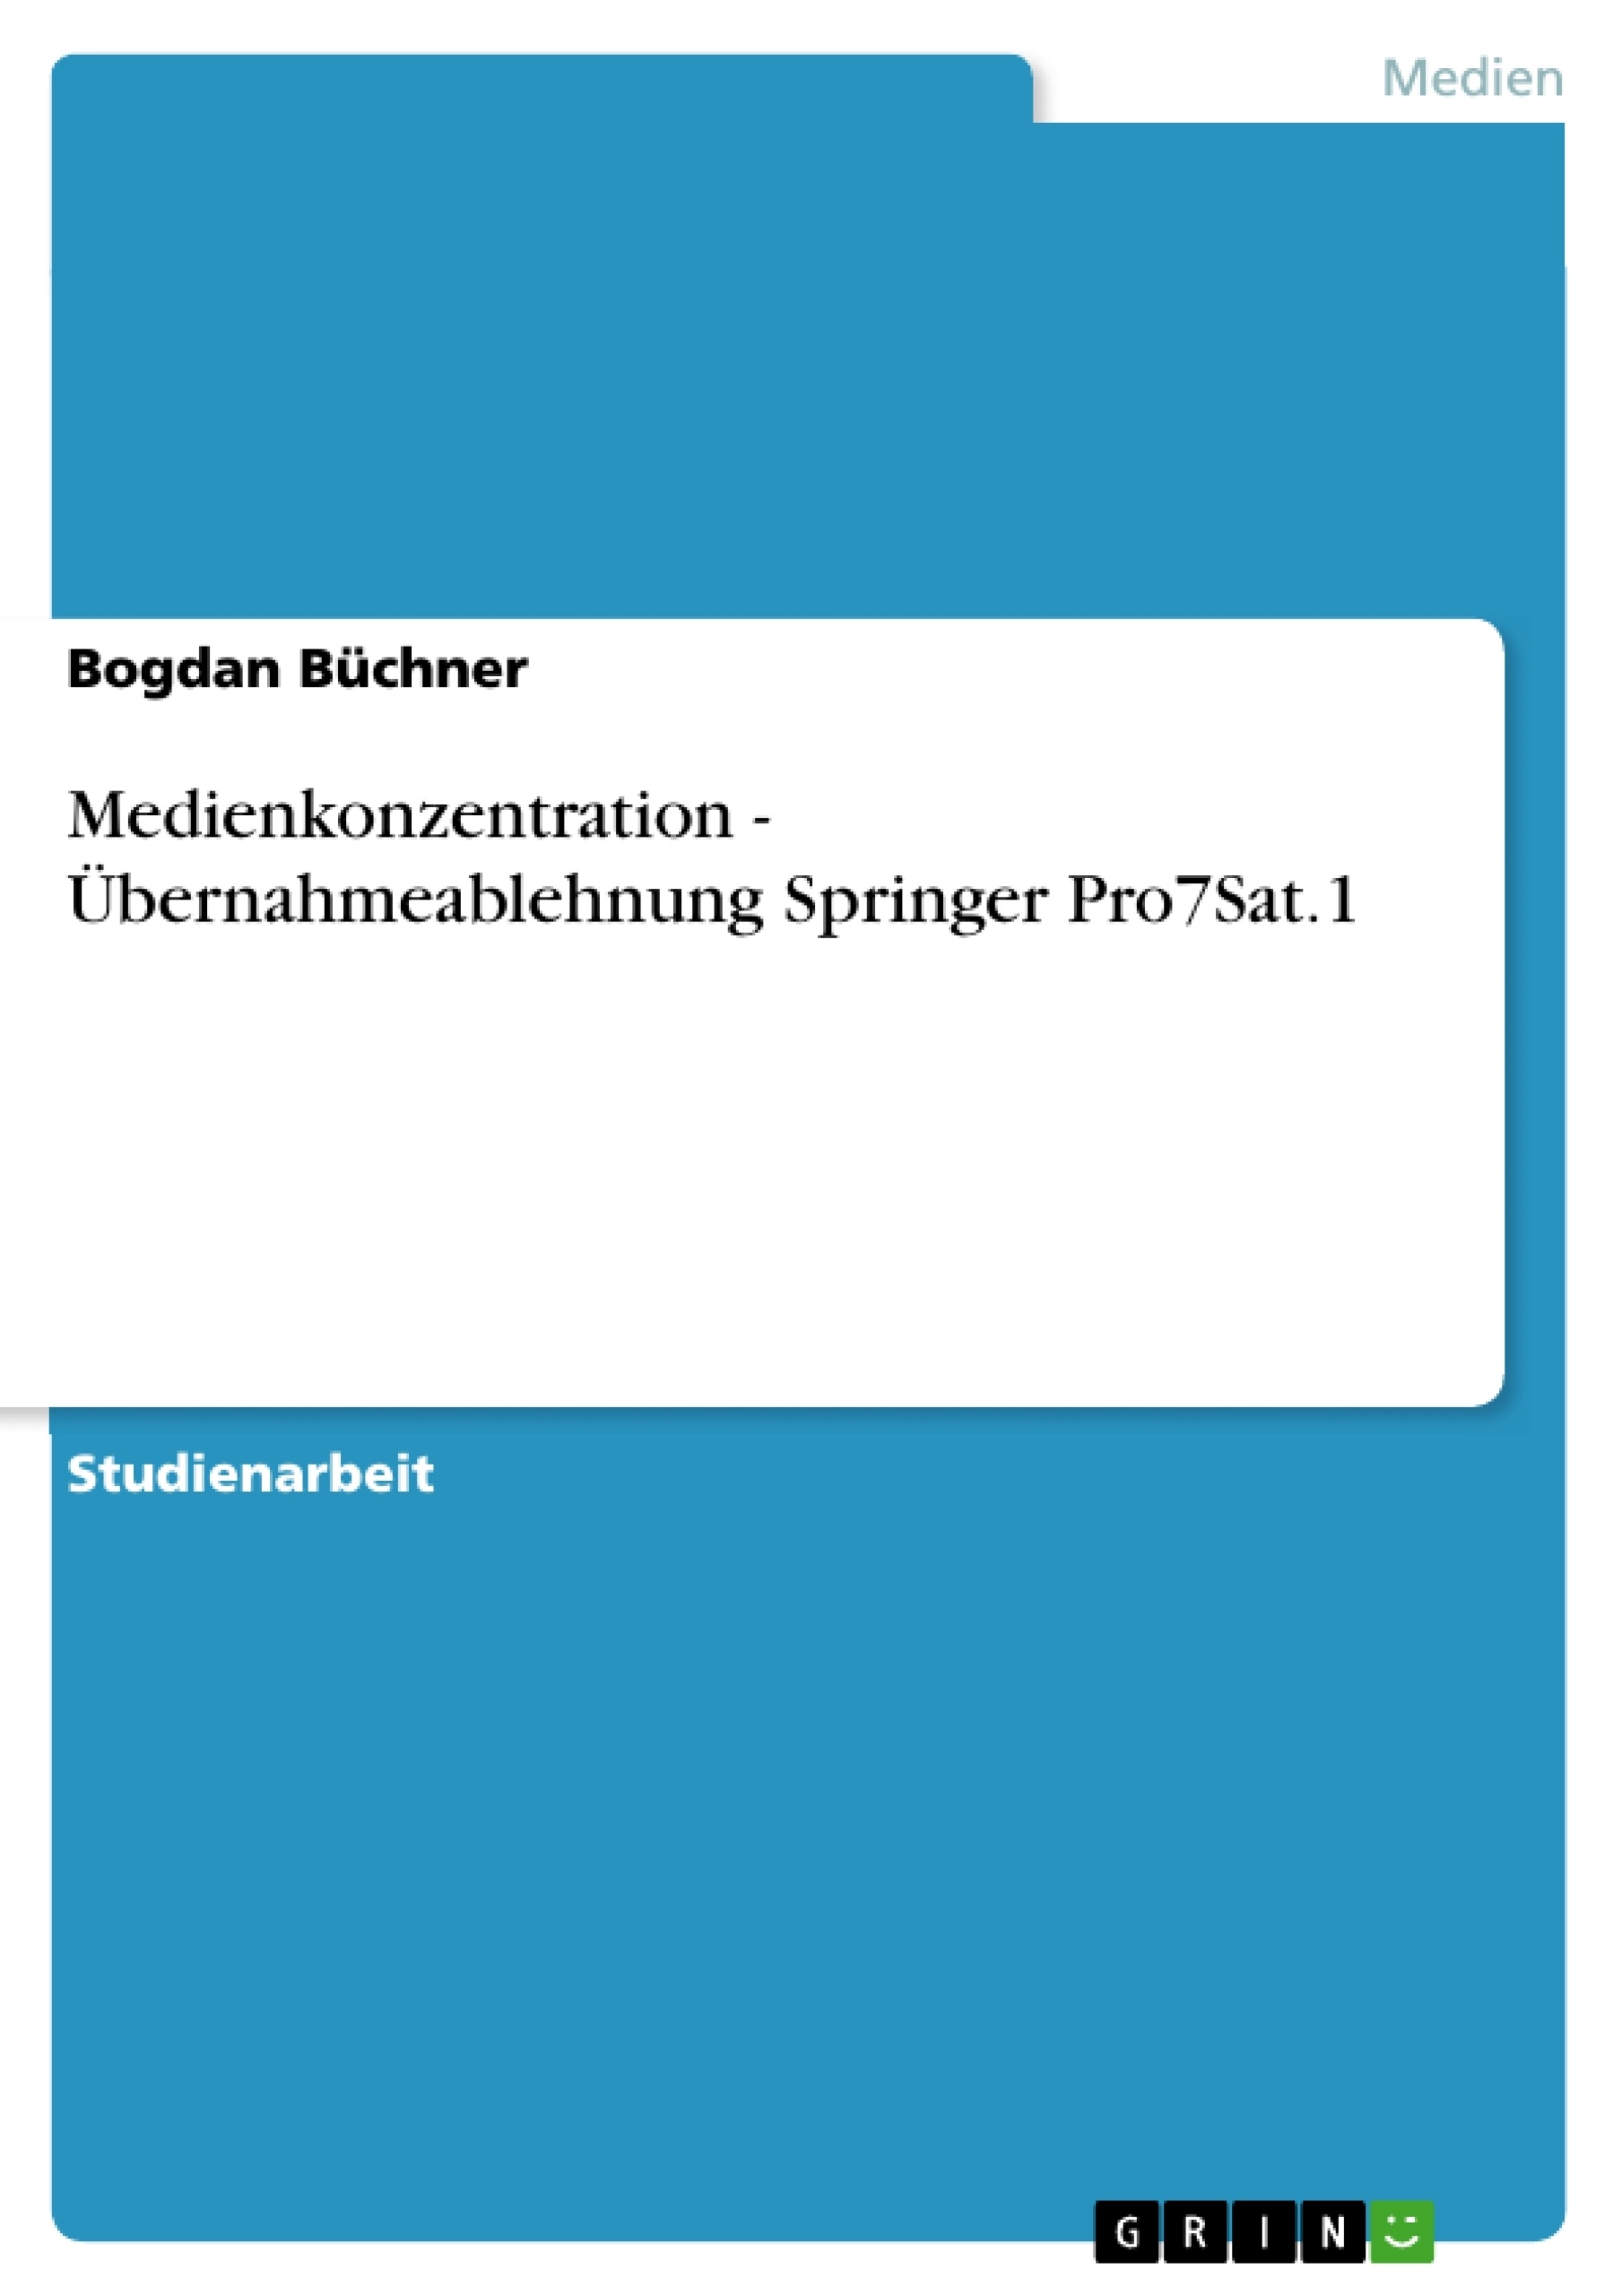 Título: Medienkonzentration - Übernahmeablehnung Springer Pro7Sat.1